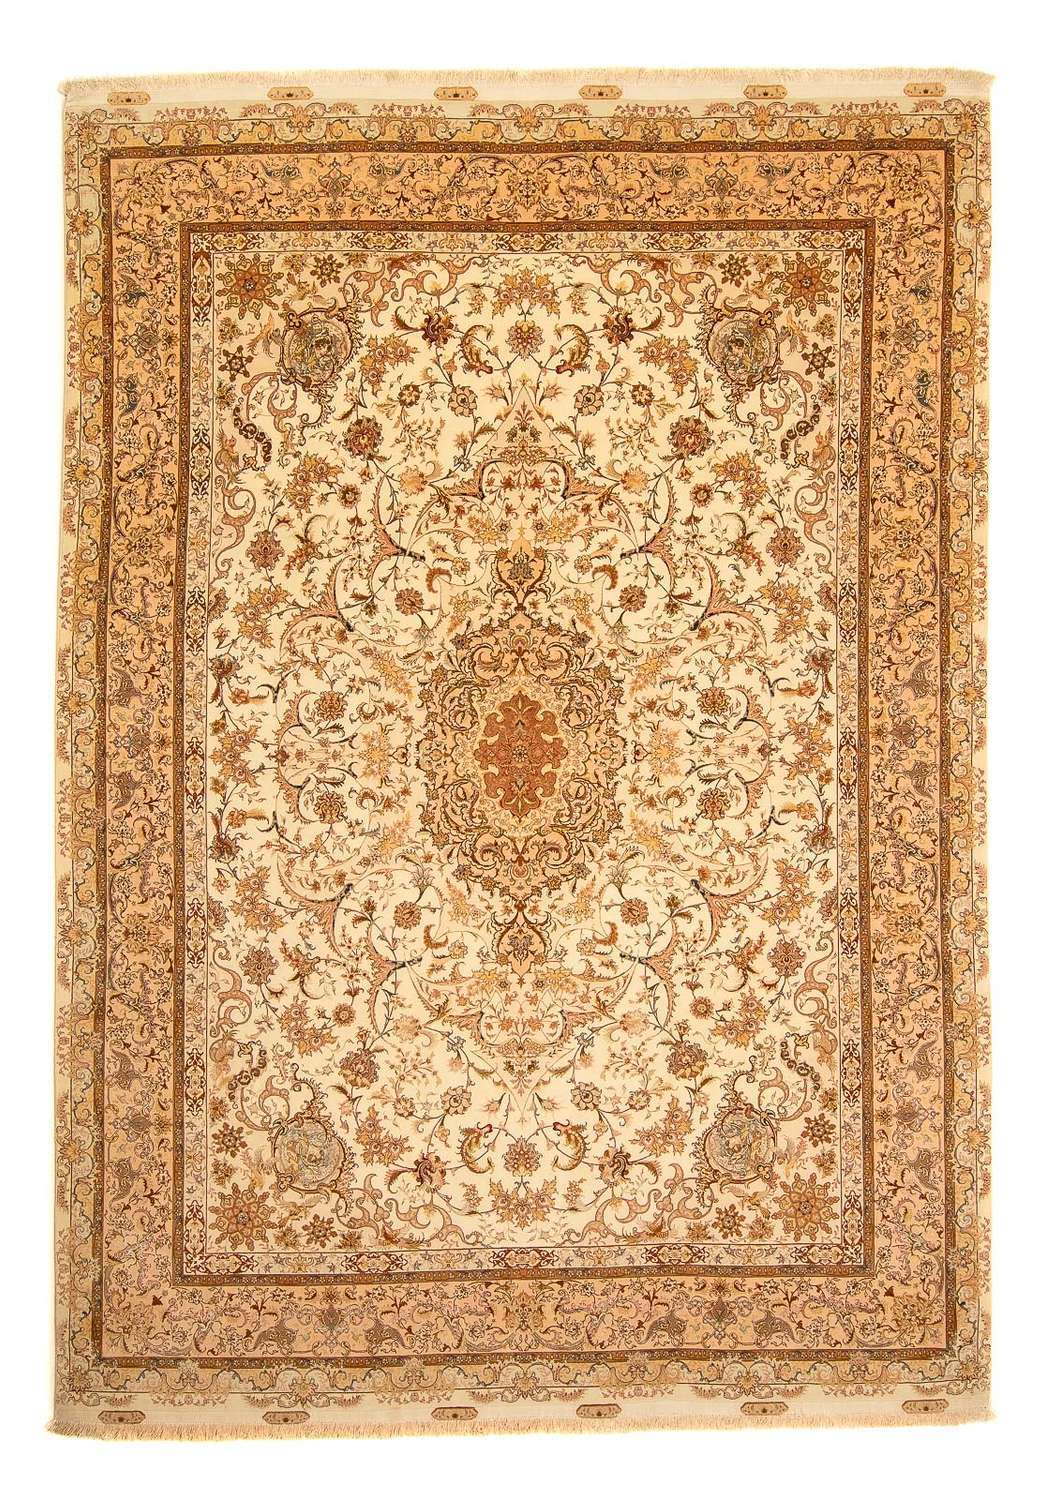 Perský koberec - Tabríz - Královský - 350 x 251 cm - světle hnědá